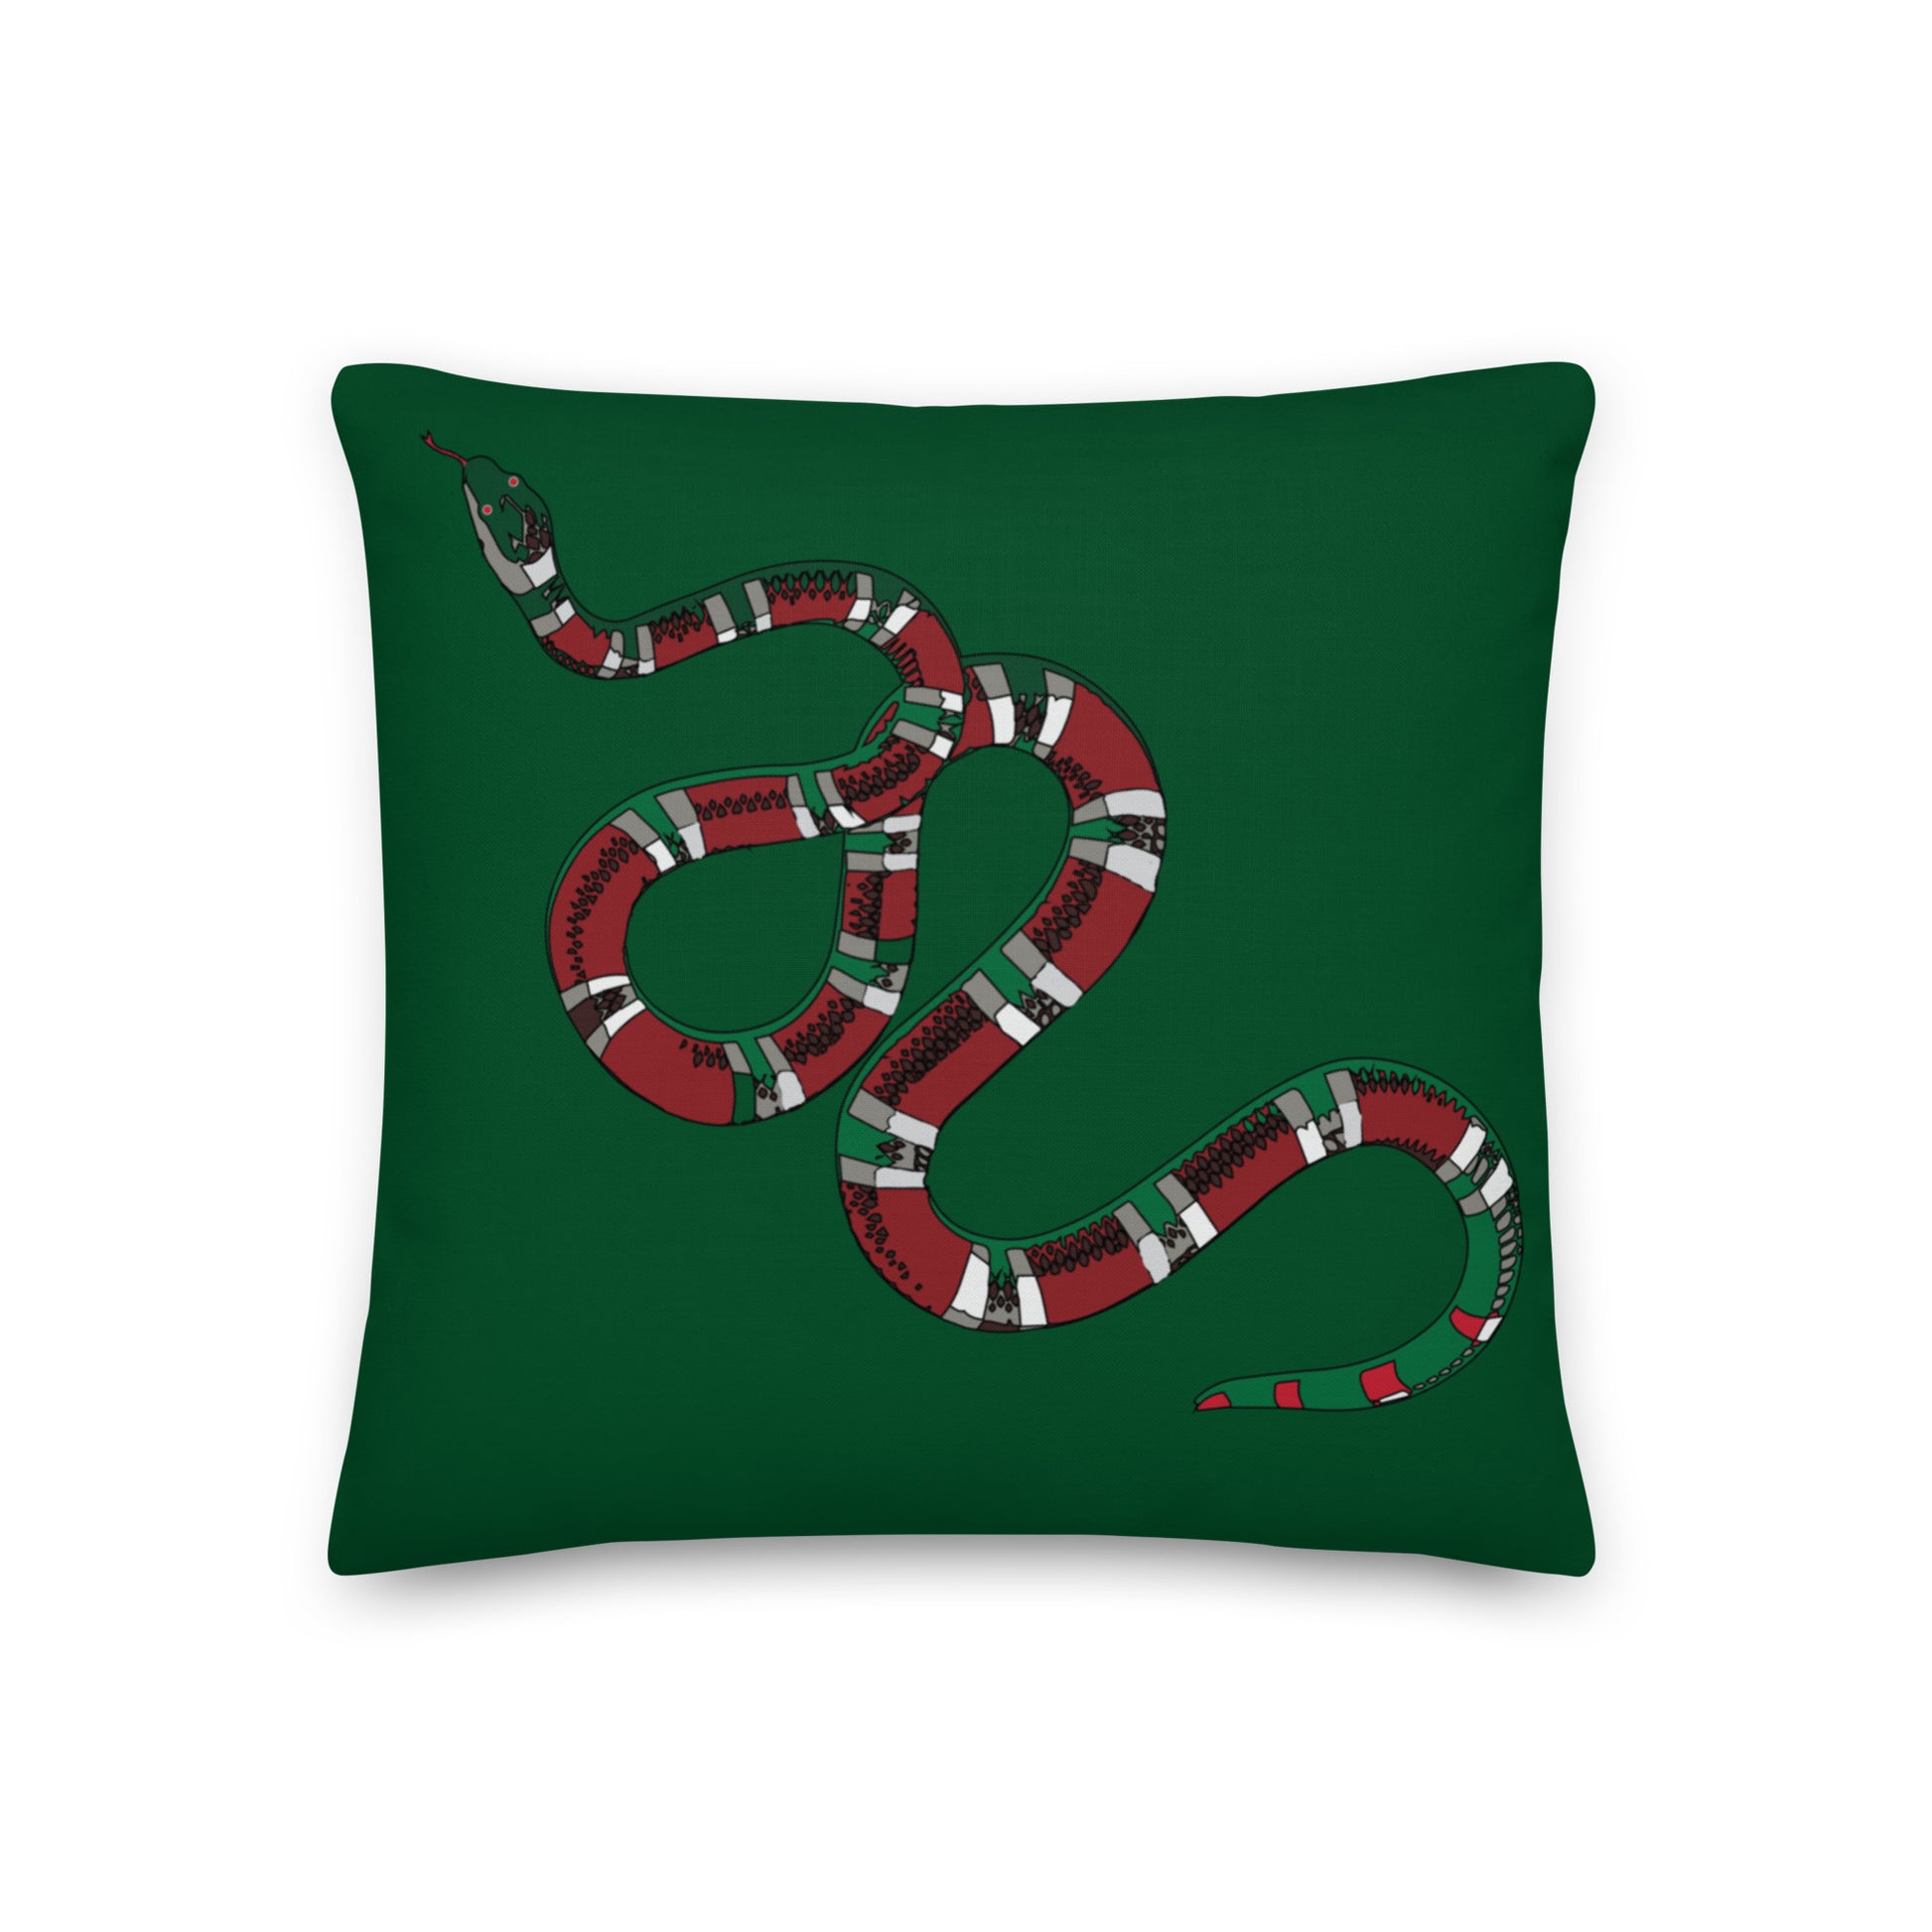 Designer Snakes On Green Premium Pillow - HipHatter